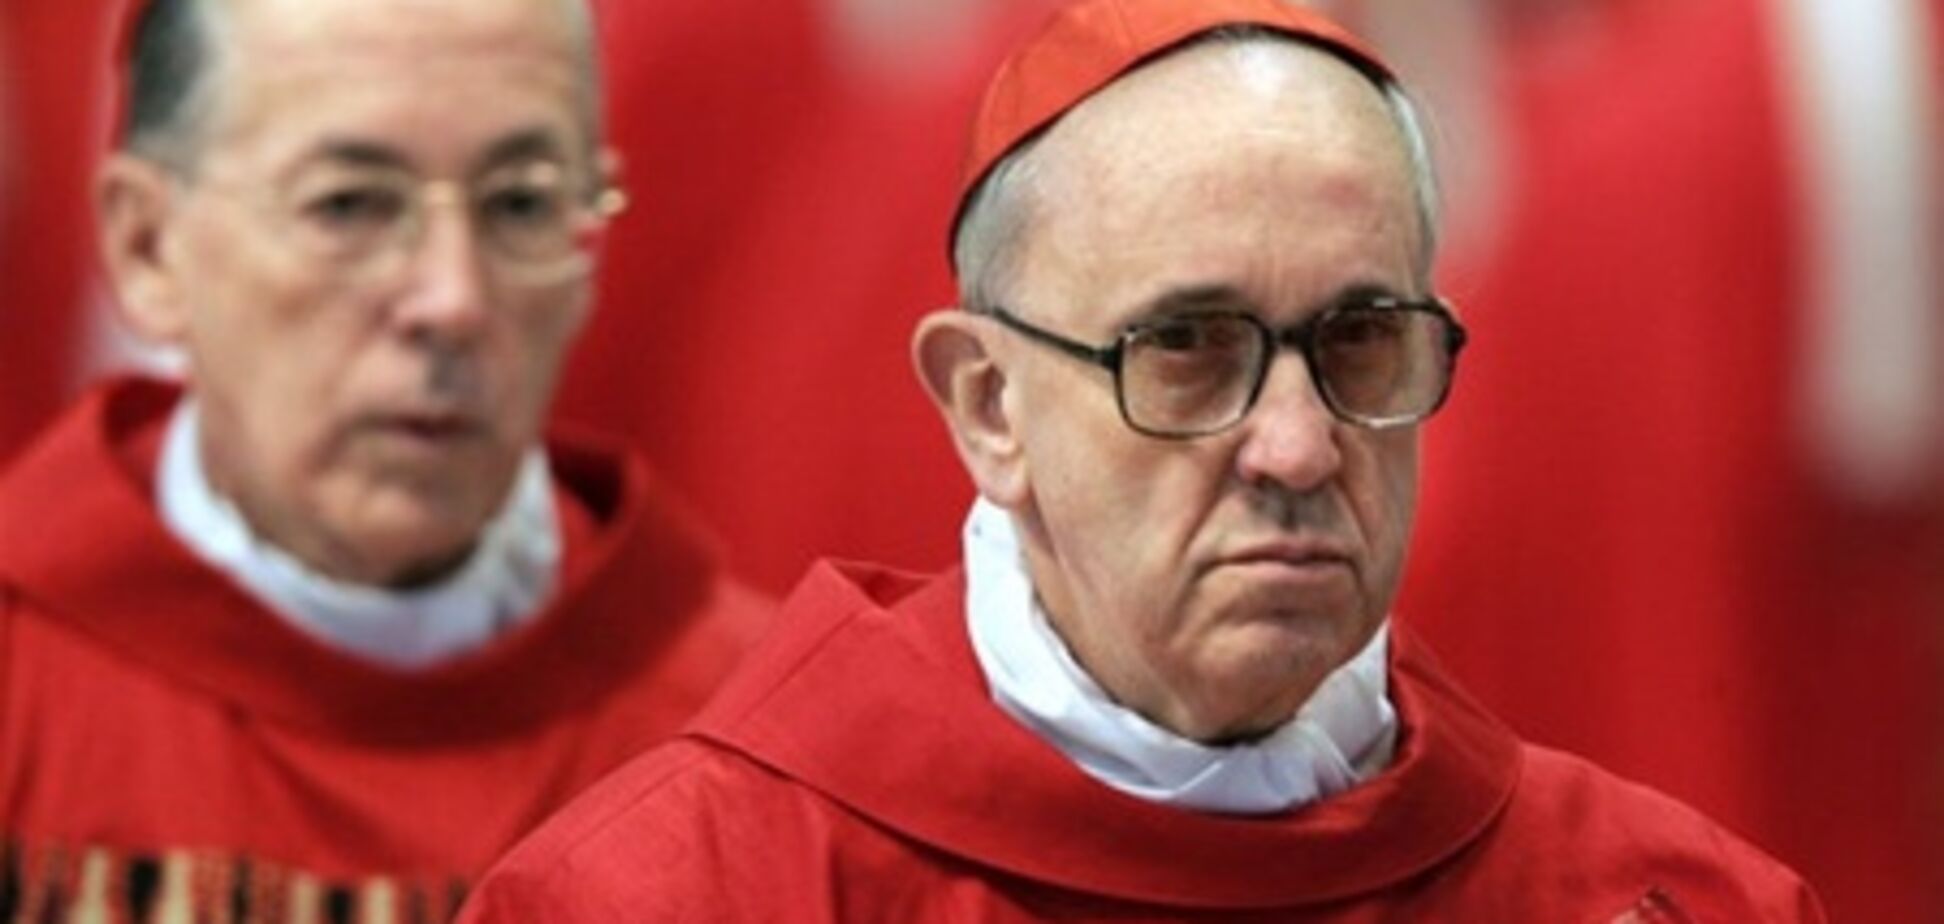 ЗМІ: новий Папа затятий противник абортів та одностатевих шлюбів